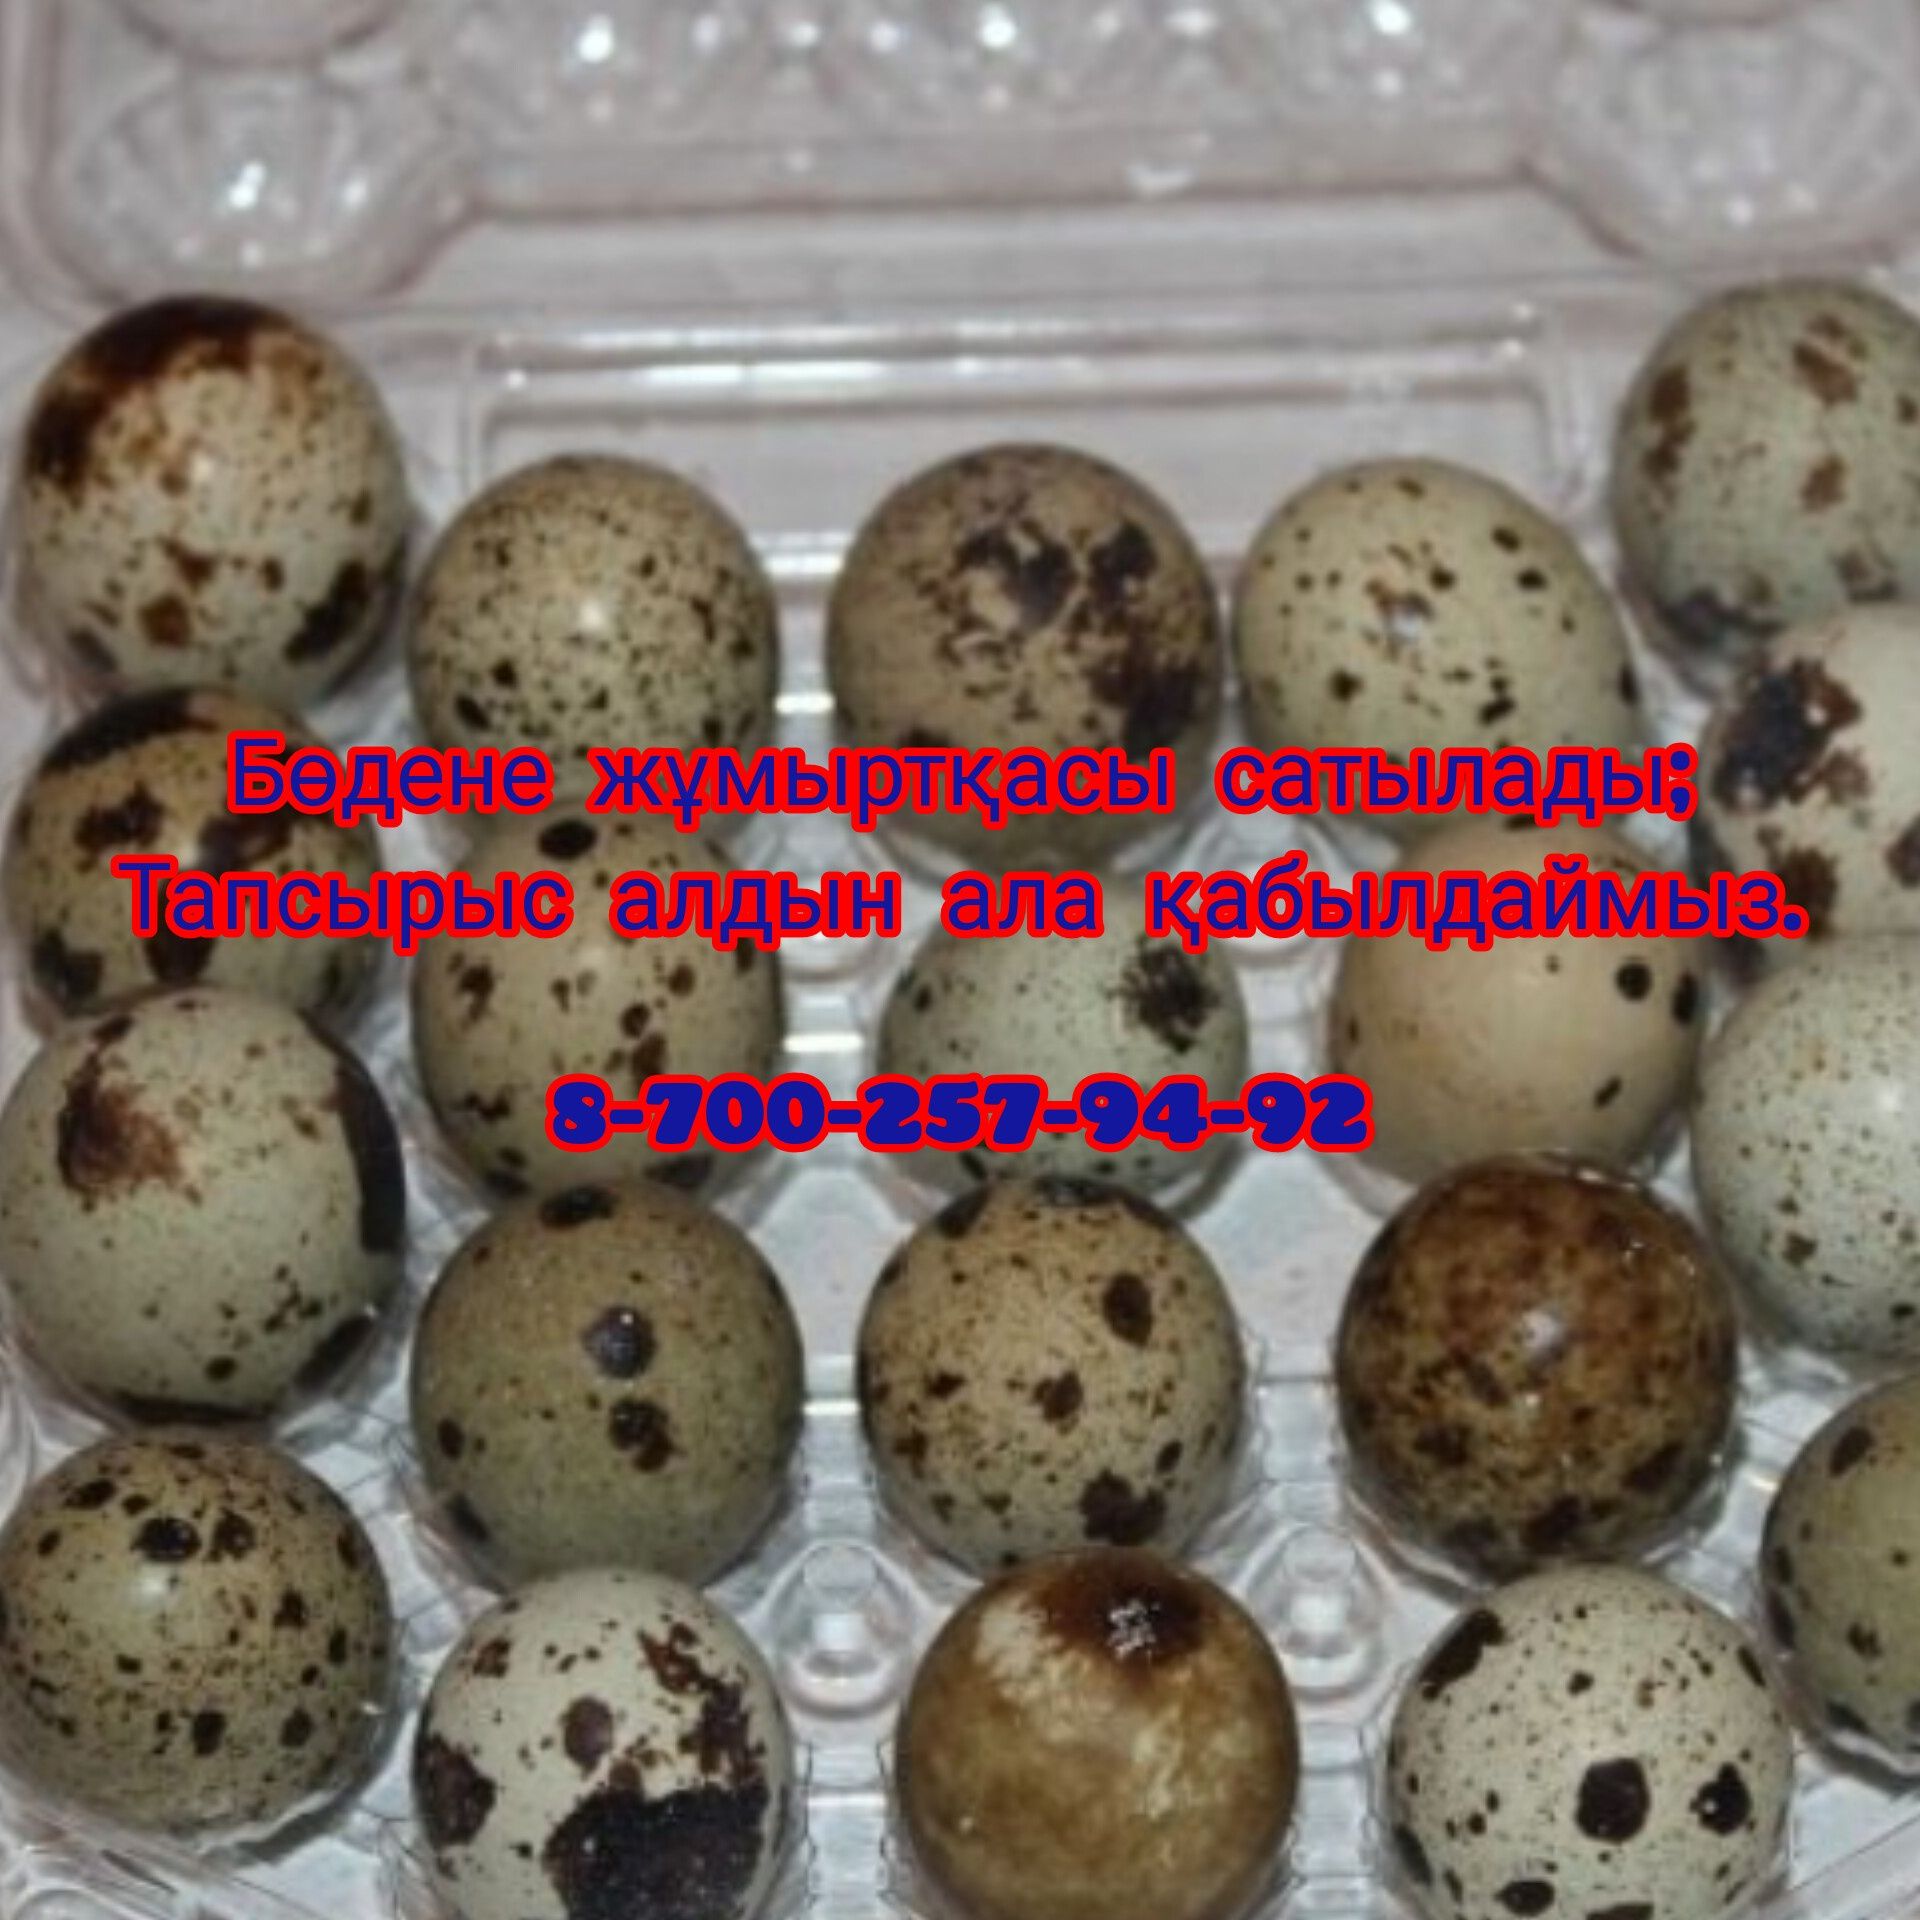 Свежие перепелные яйцом. 50тг  Балғын бөдене жұмыртқасы 50тг